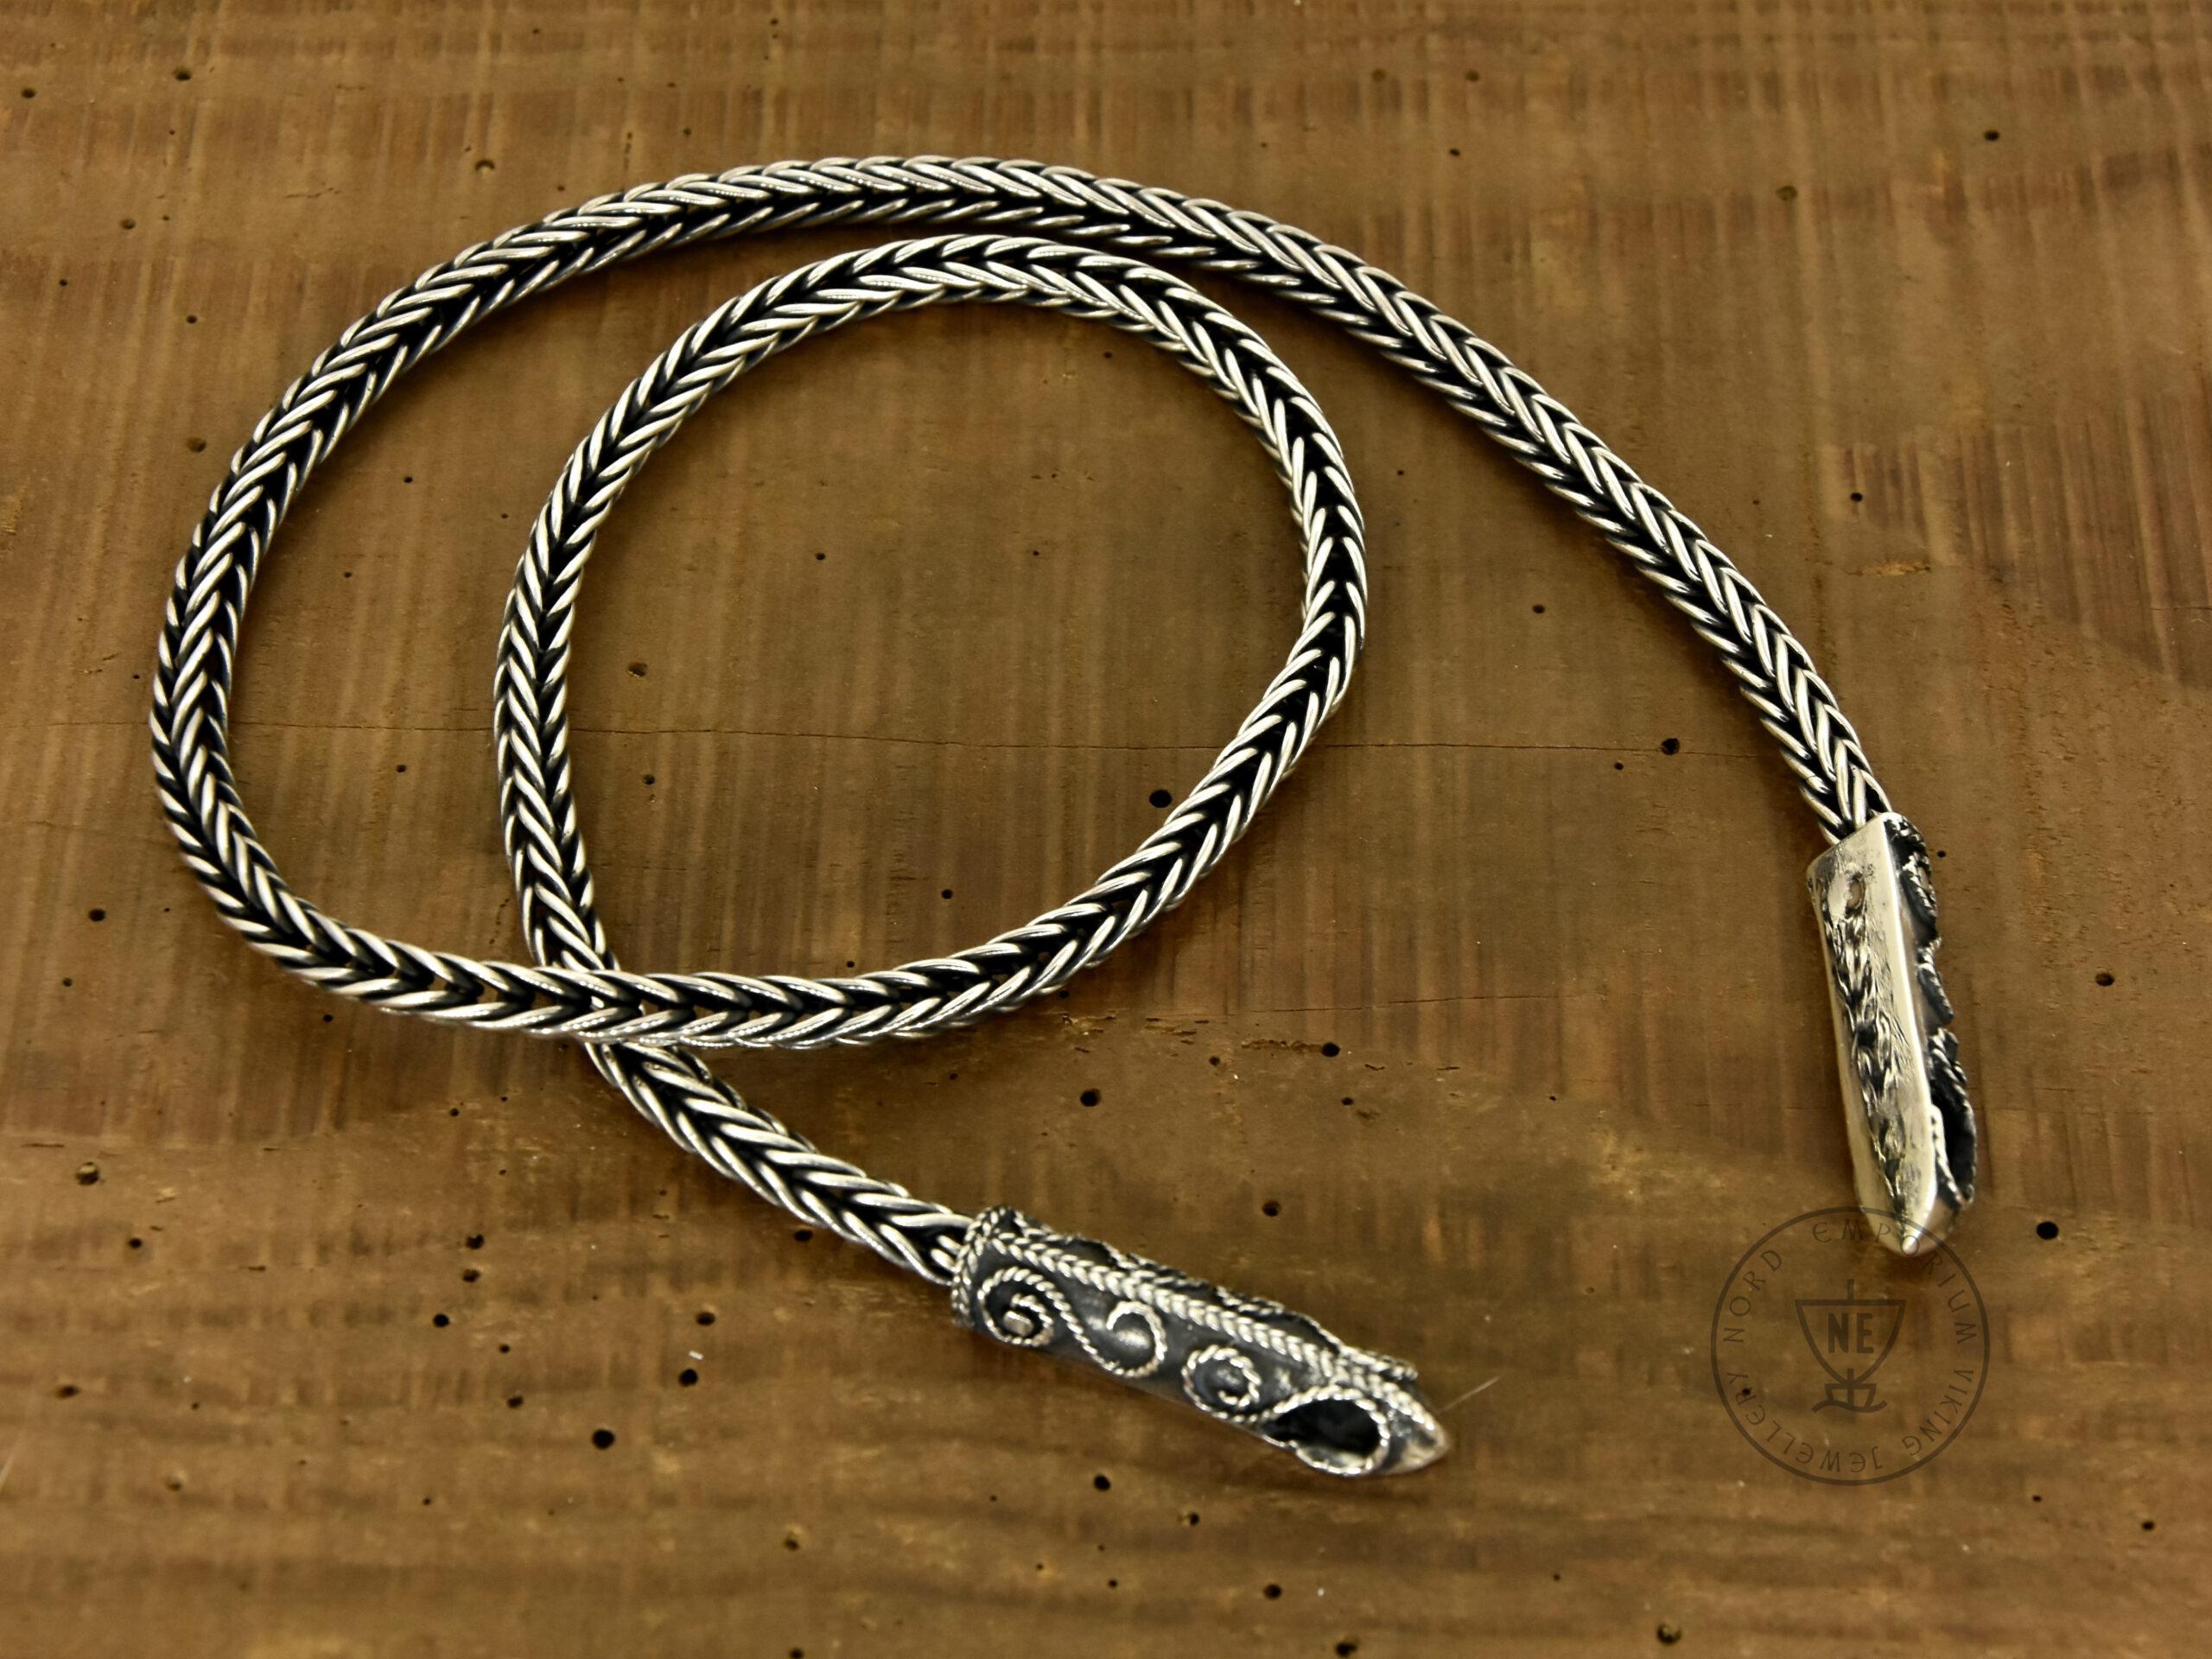 999 Silver Chain - convict chain